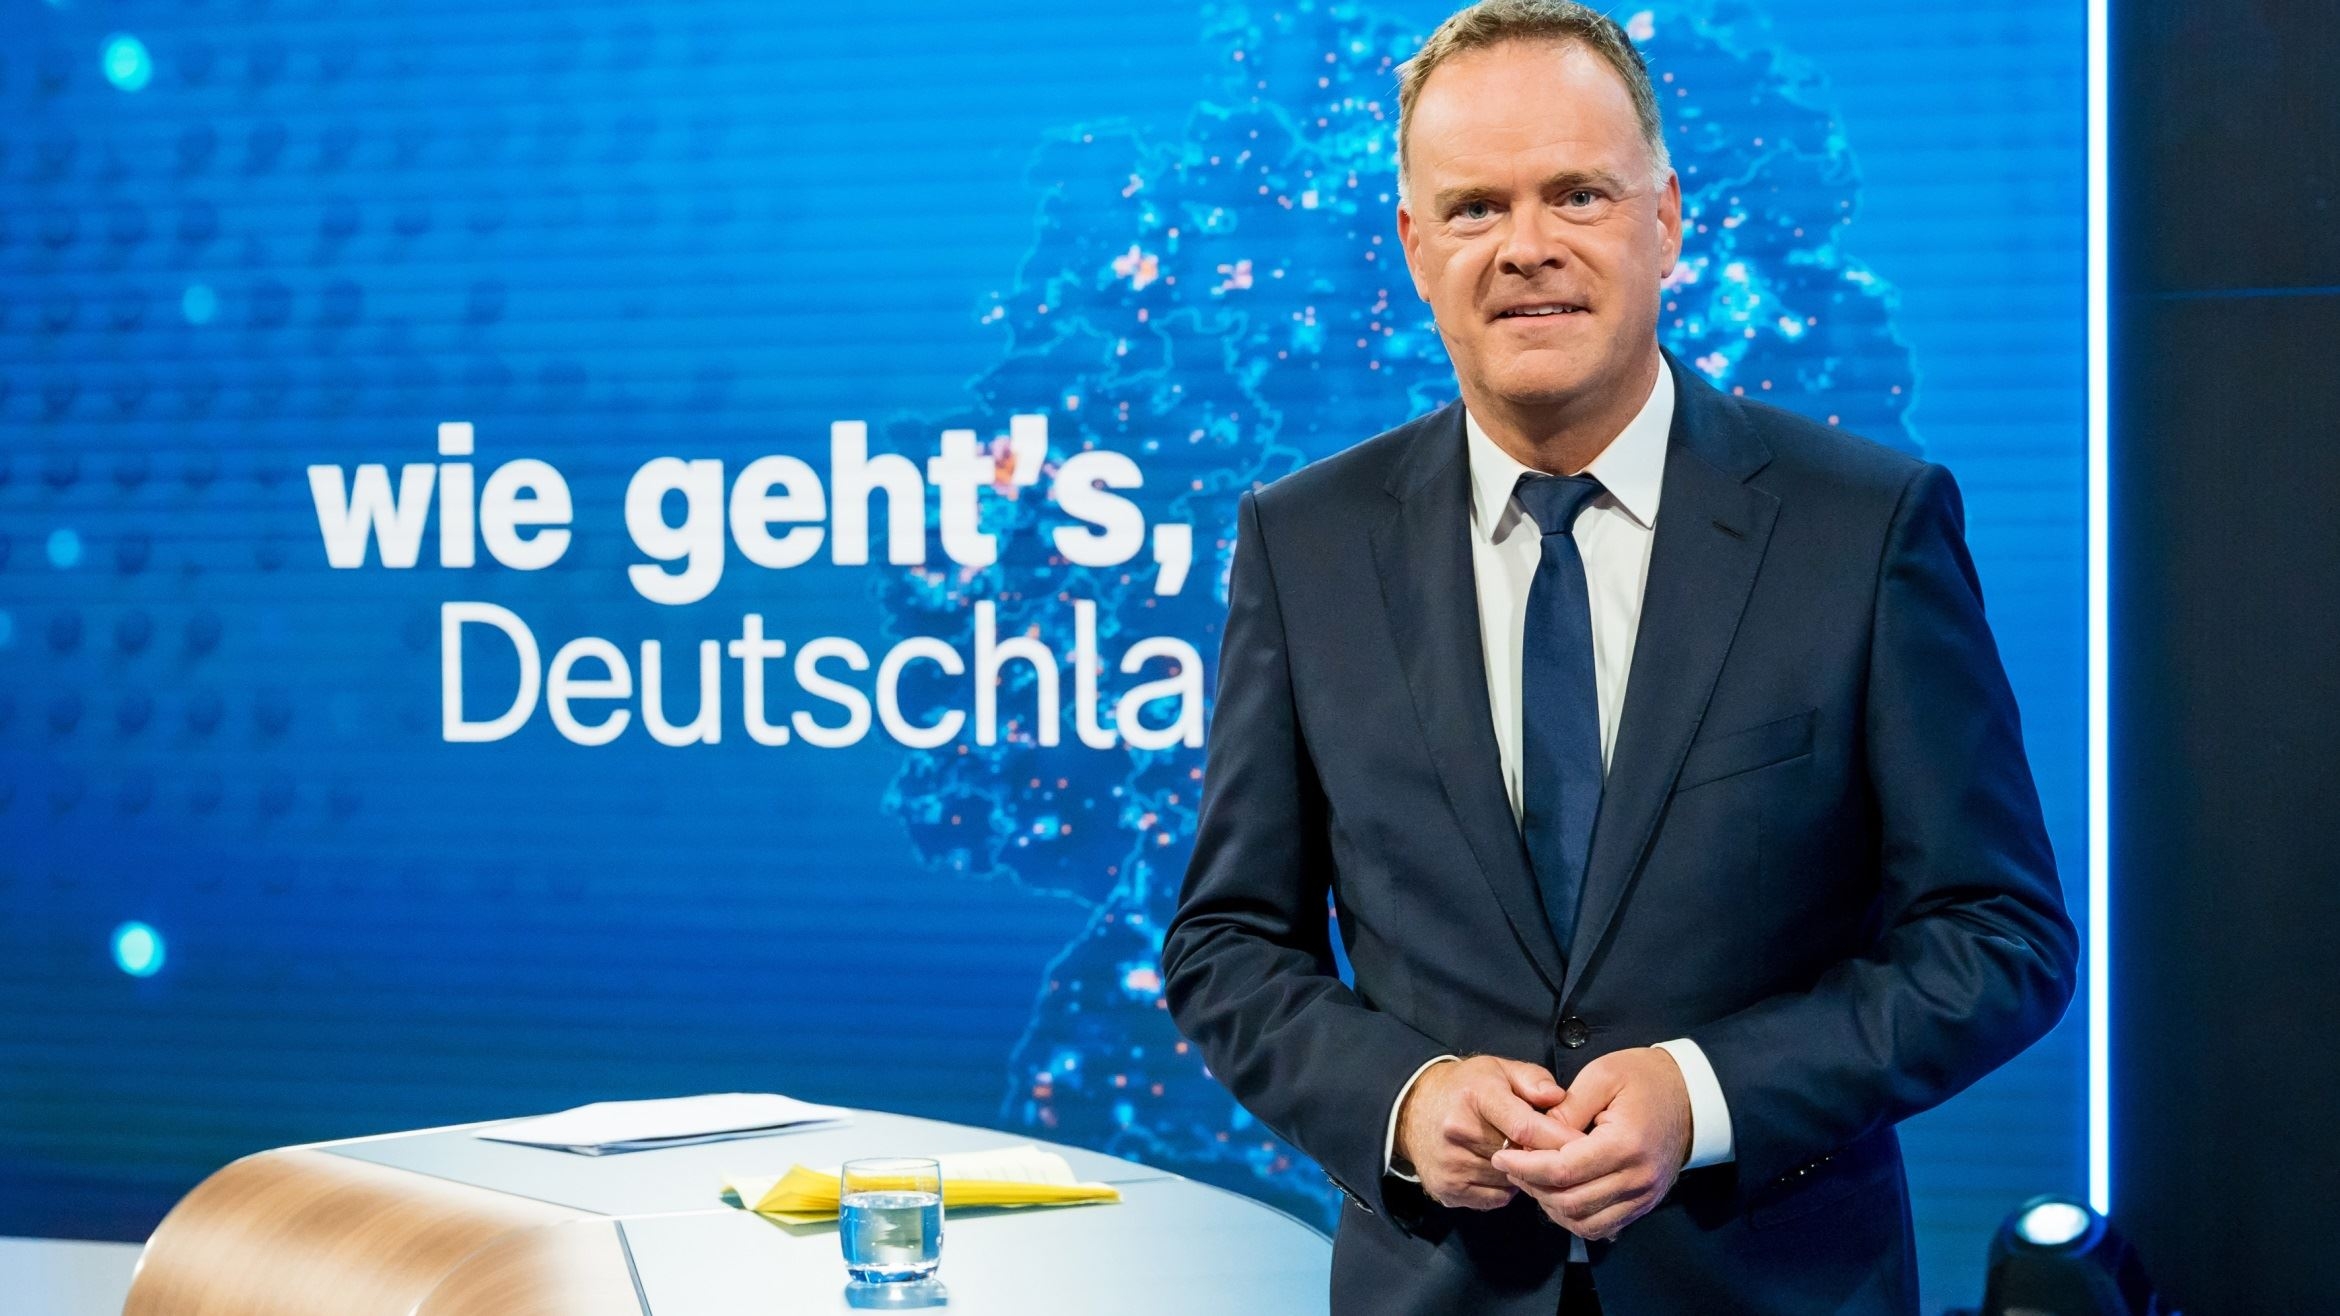 Christian Sievers moderierte "Wie geht's, Deutschland?" - 